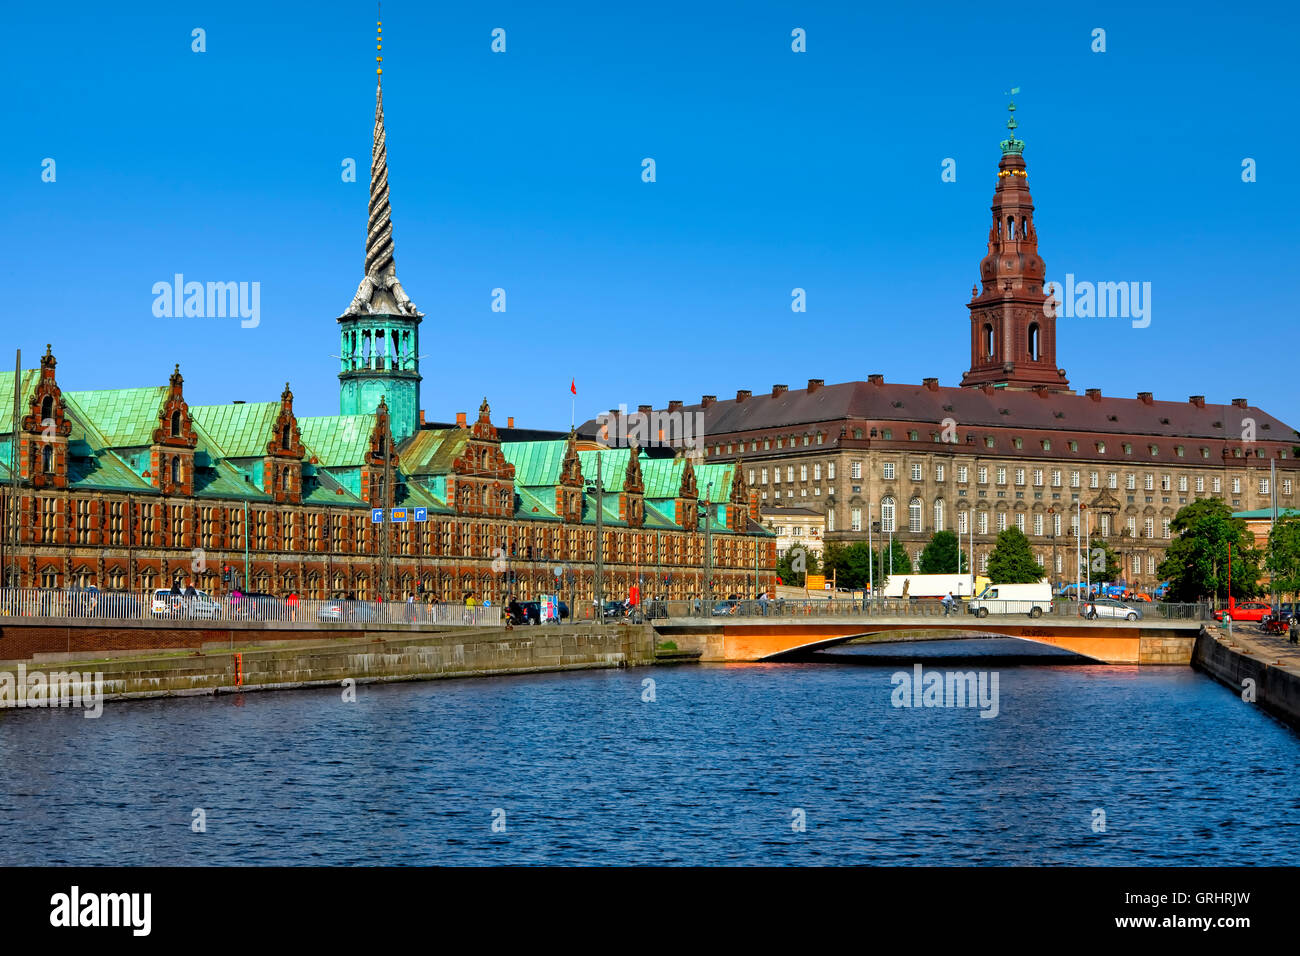 La bourse et le château de Christianborg à Copenhague Banque D'Images